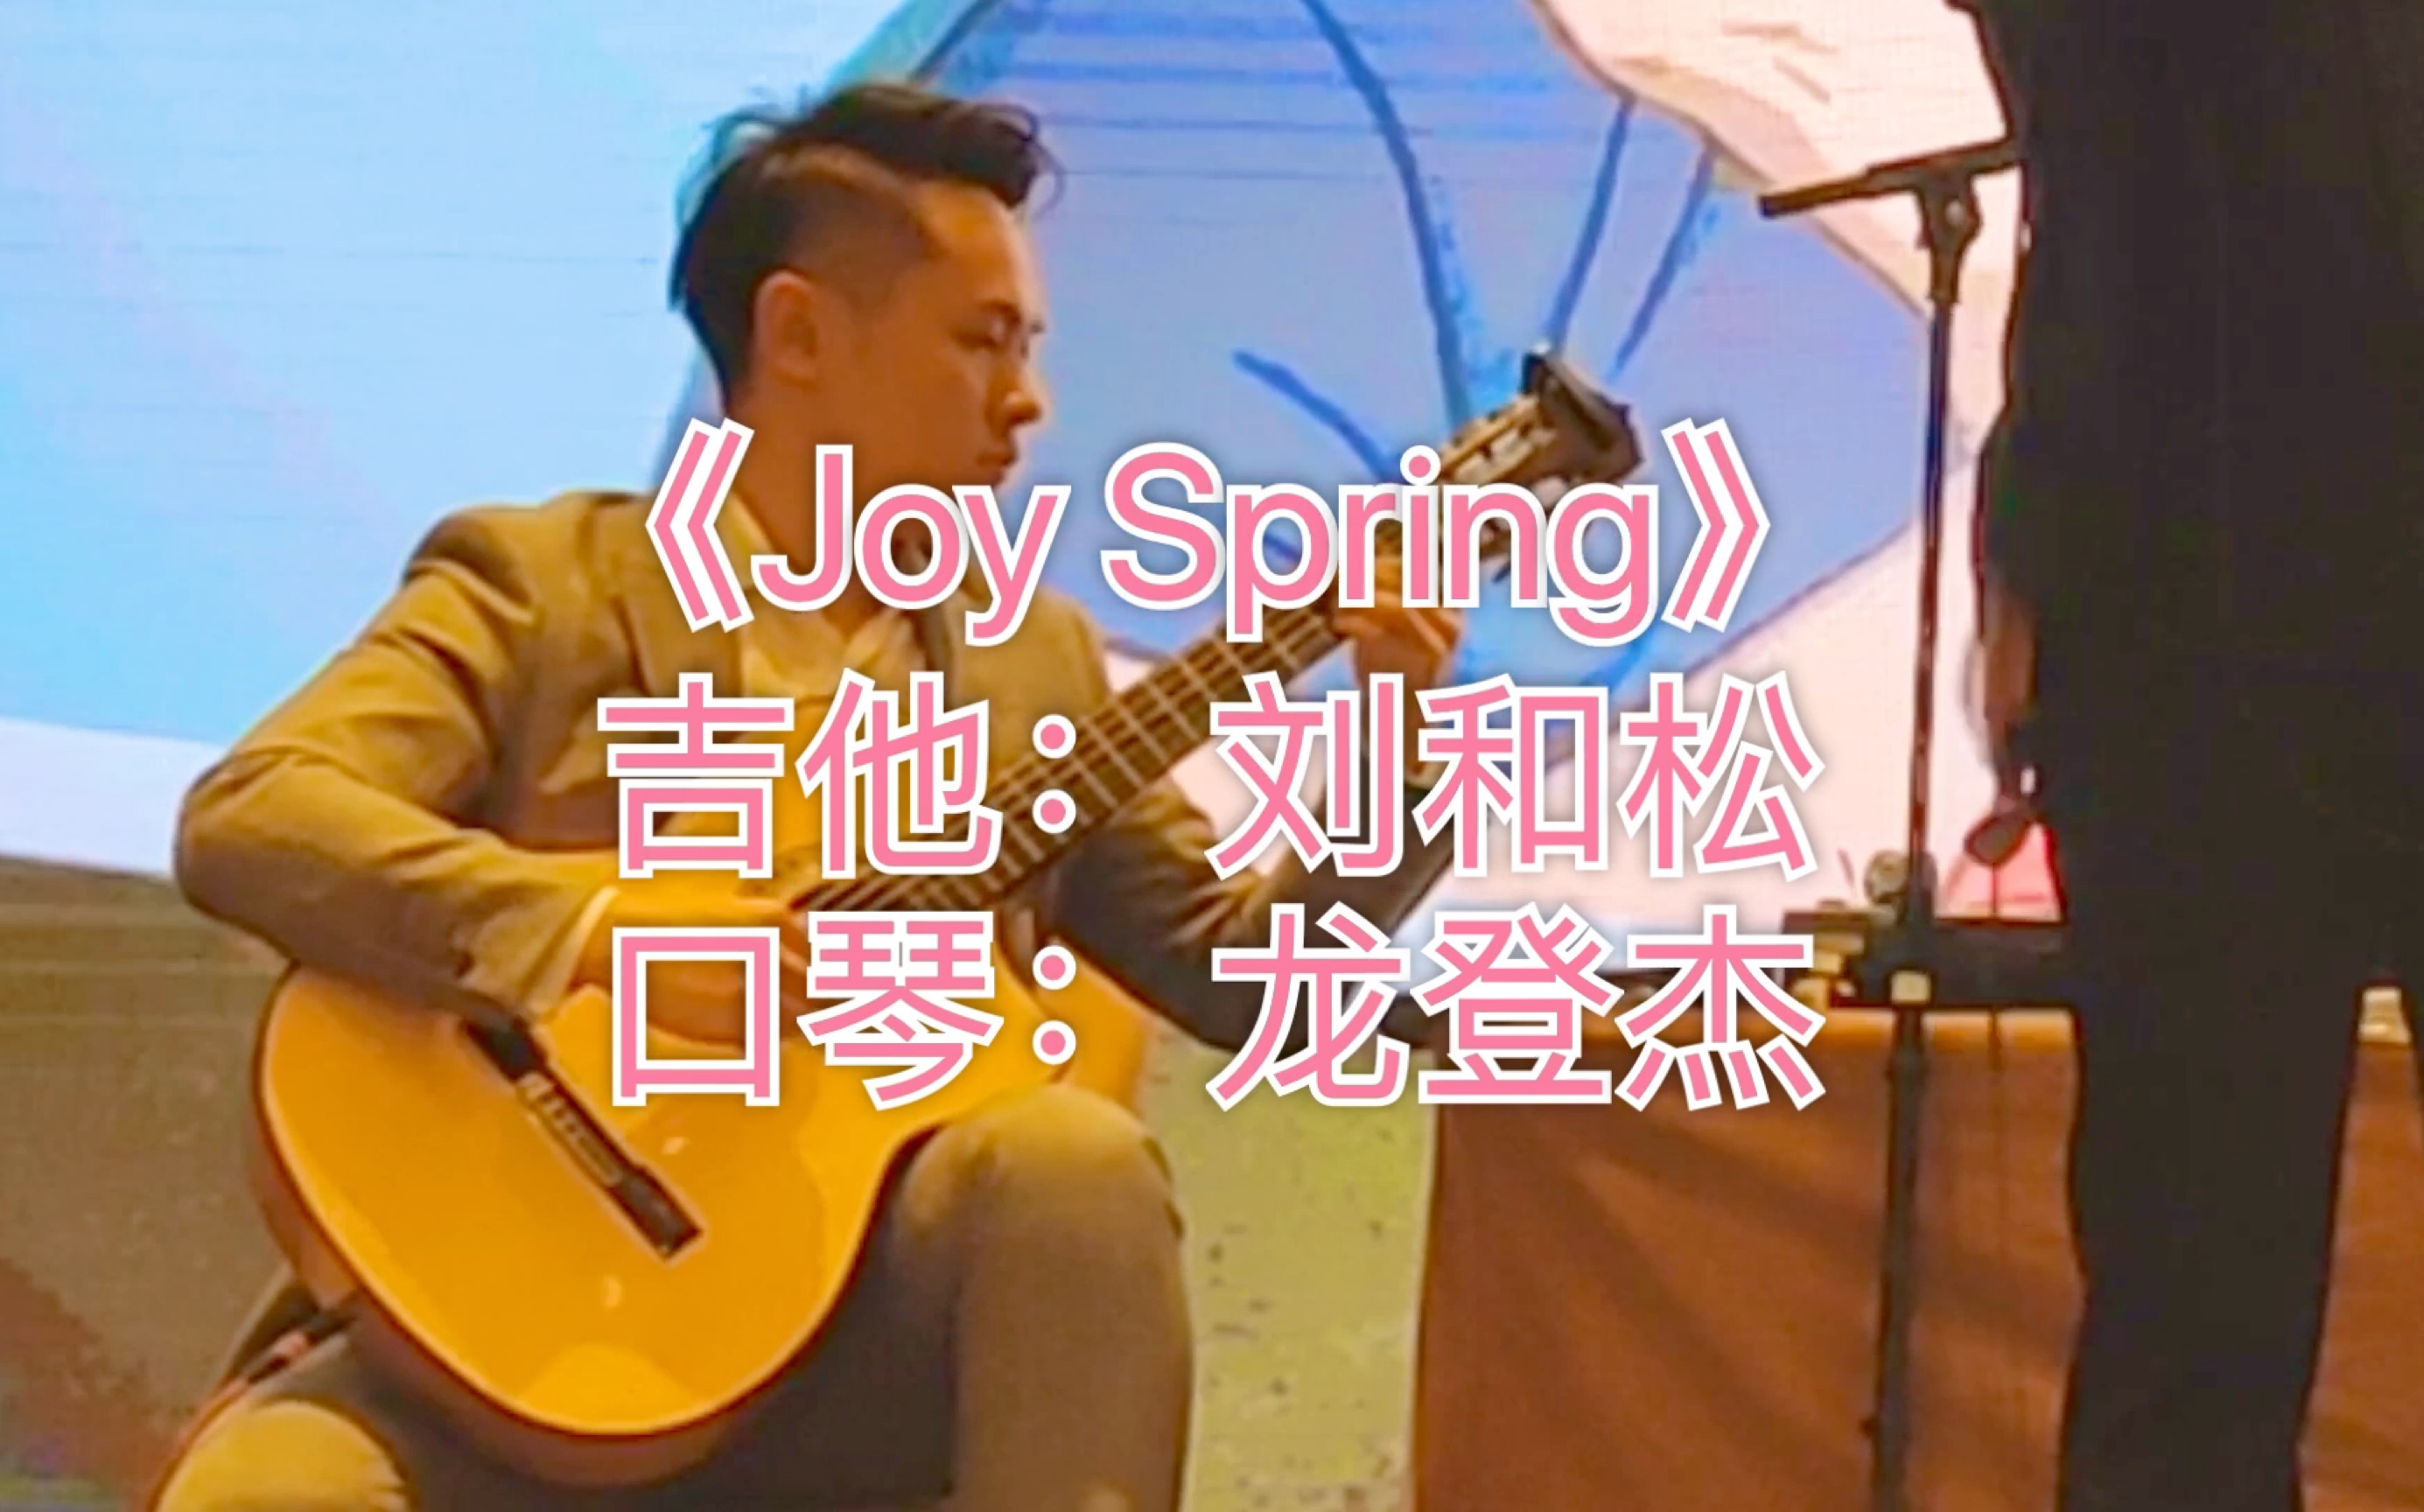 【古典吉他】VS【爵士口琴】演奏经典爵士曲目《Joy Spring》